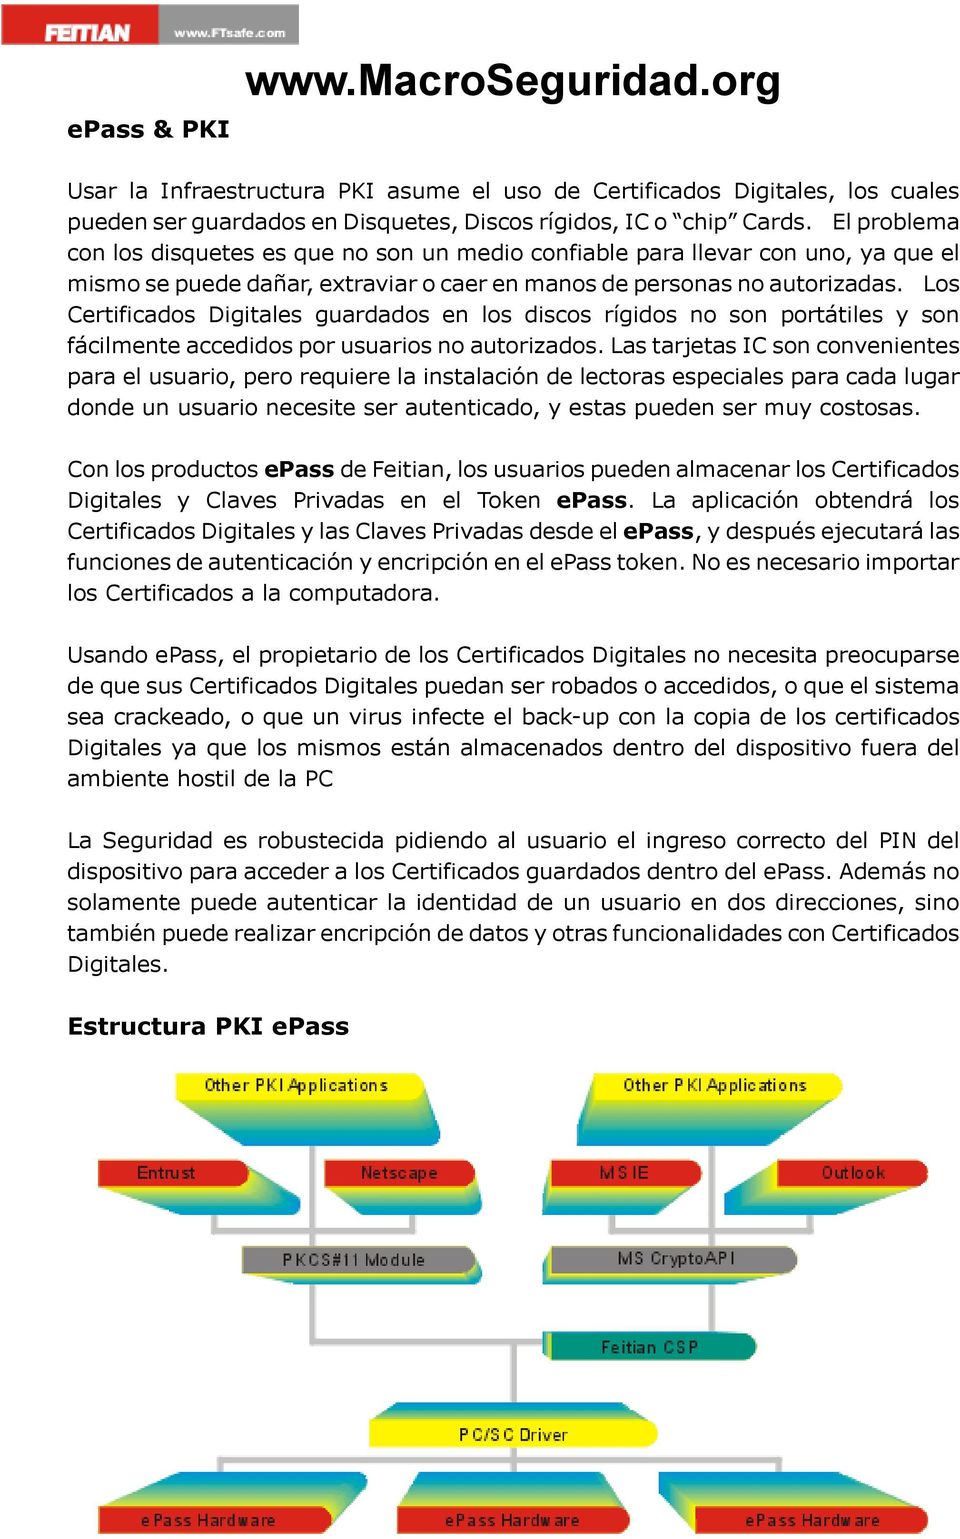 Los Certificados Digitales guardados en los discos rígidos no son portátiles y son fácilmente accedidos por usuarios no autorizados.